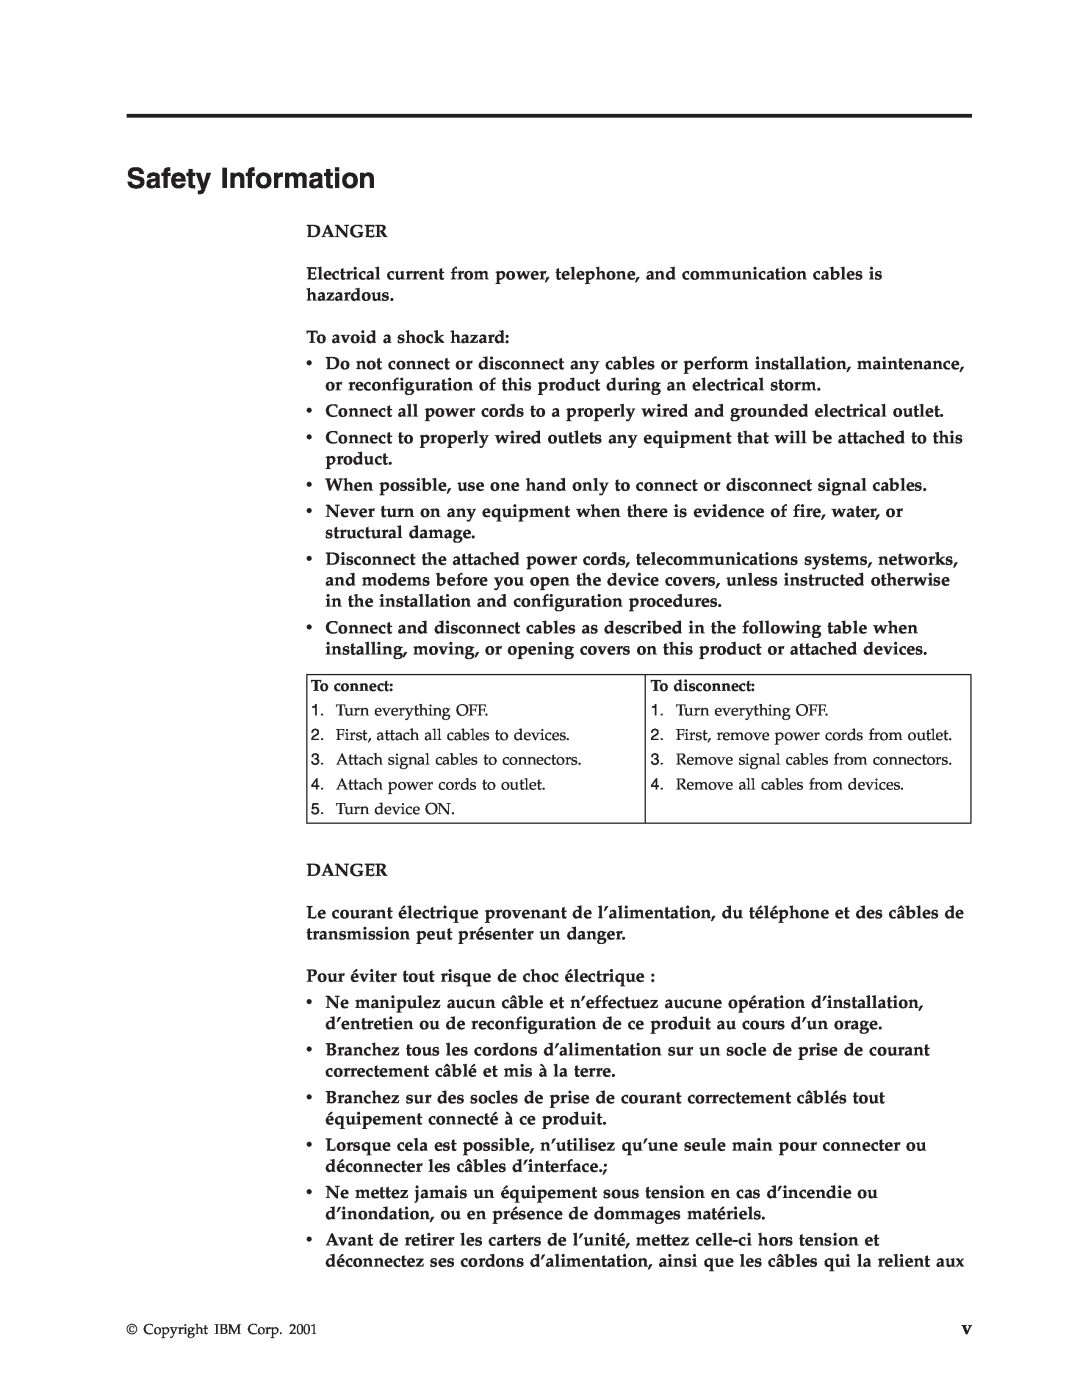 IBM Partner Pavilion 6825 Safety Information, Danger, To avoid a shock hazard, Pour éviter tout risque de choc électrique 